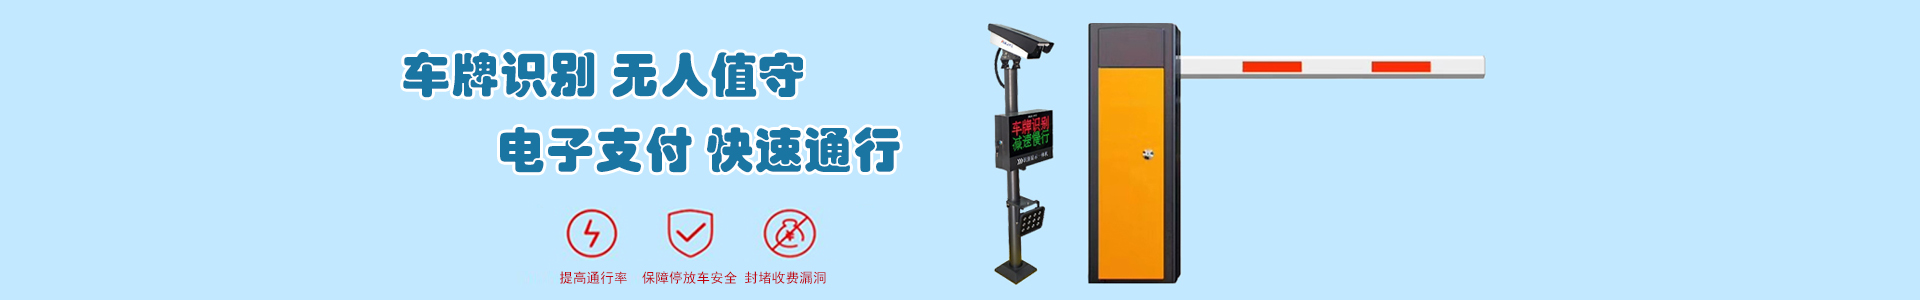 监控3-监控系统-上海帆蓝智能科技有限公司-车辆车牌识别|监控摄像头|道闸|小区门禁|人脸识别|伸缩门|